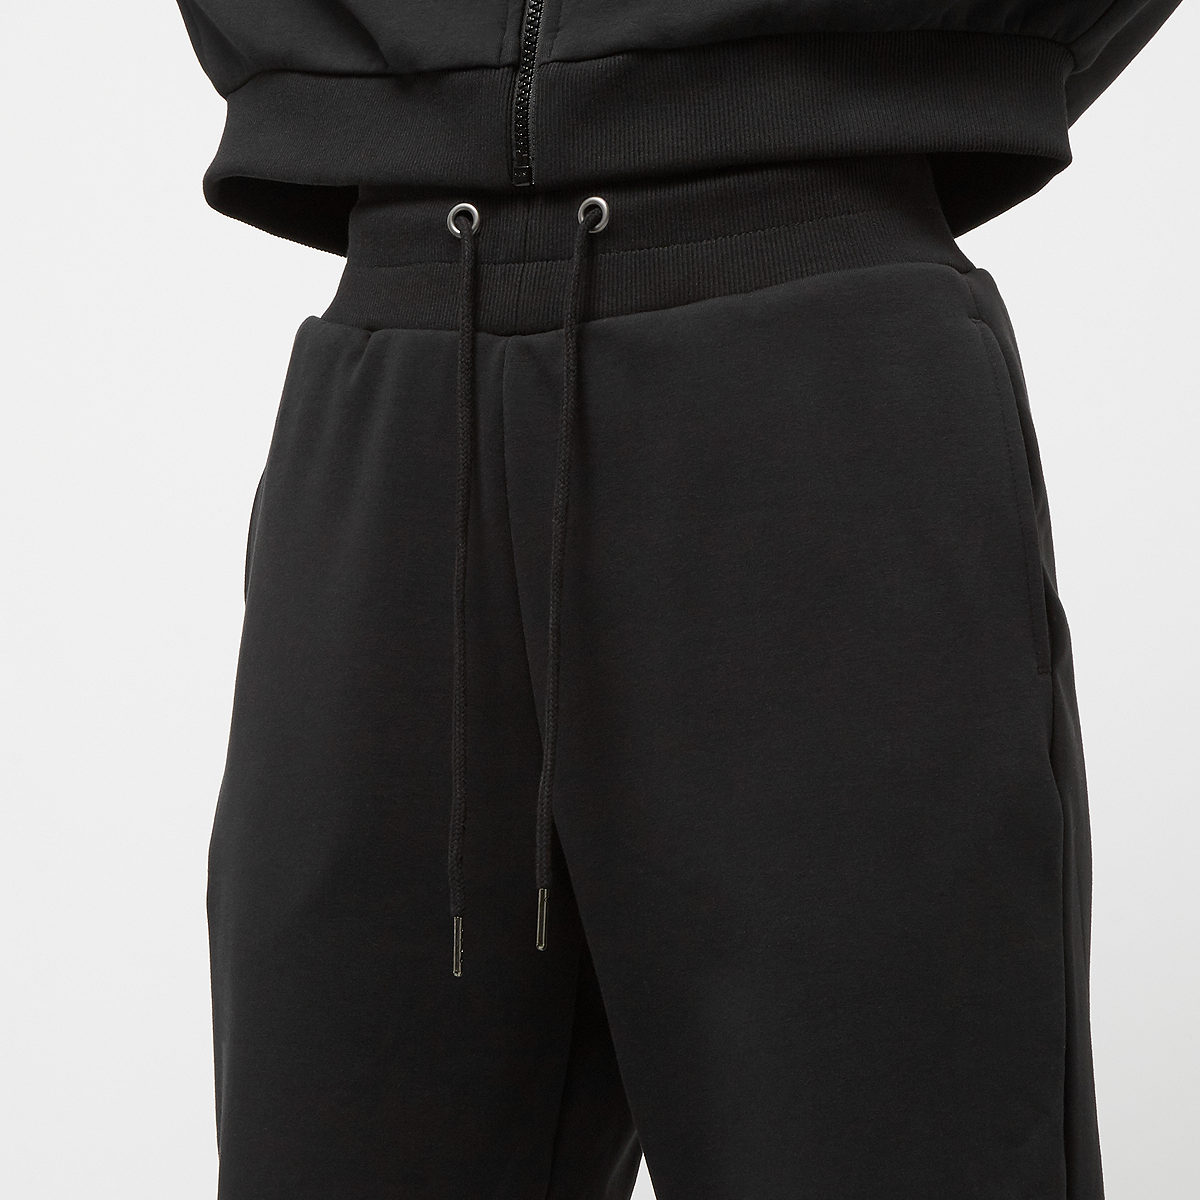 Urban Classics Ladies Cozy Sweatpants Trainingsbroeken Dames schwarz maat: XS beschikbare maaten:XS S M L